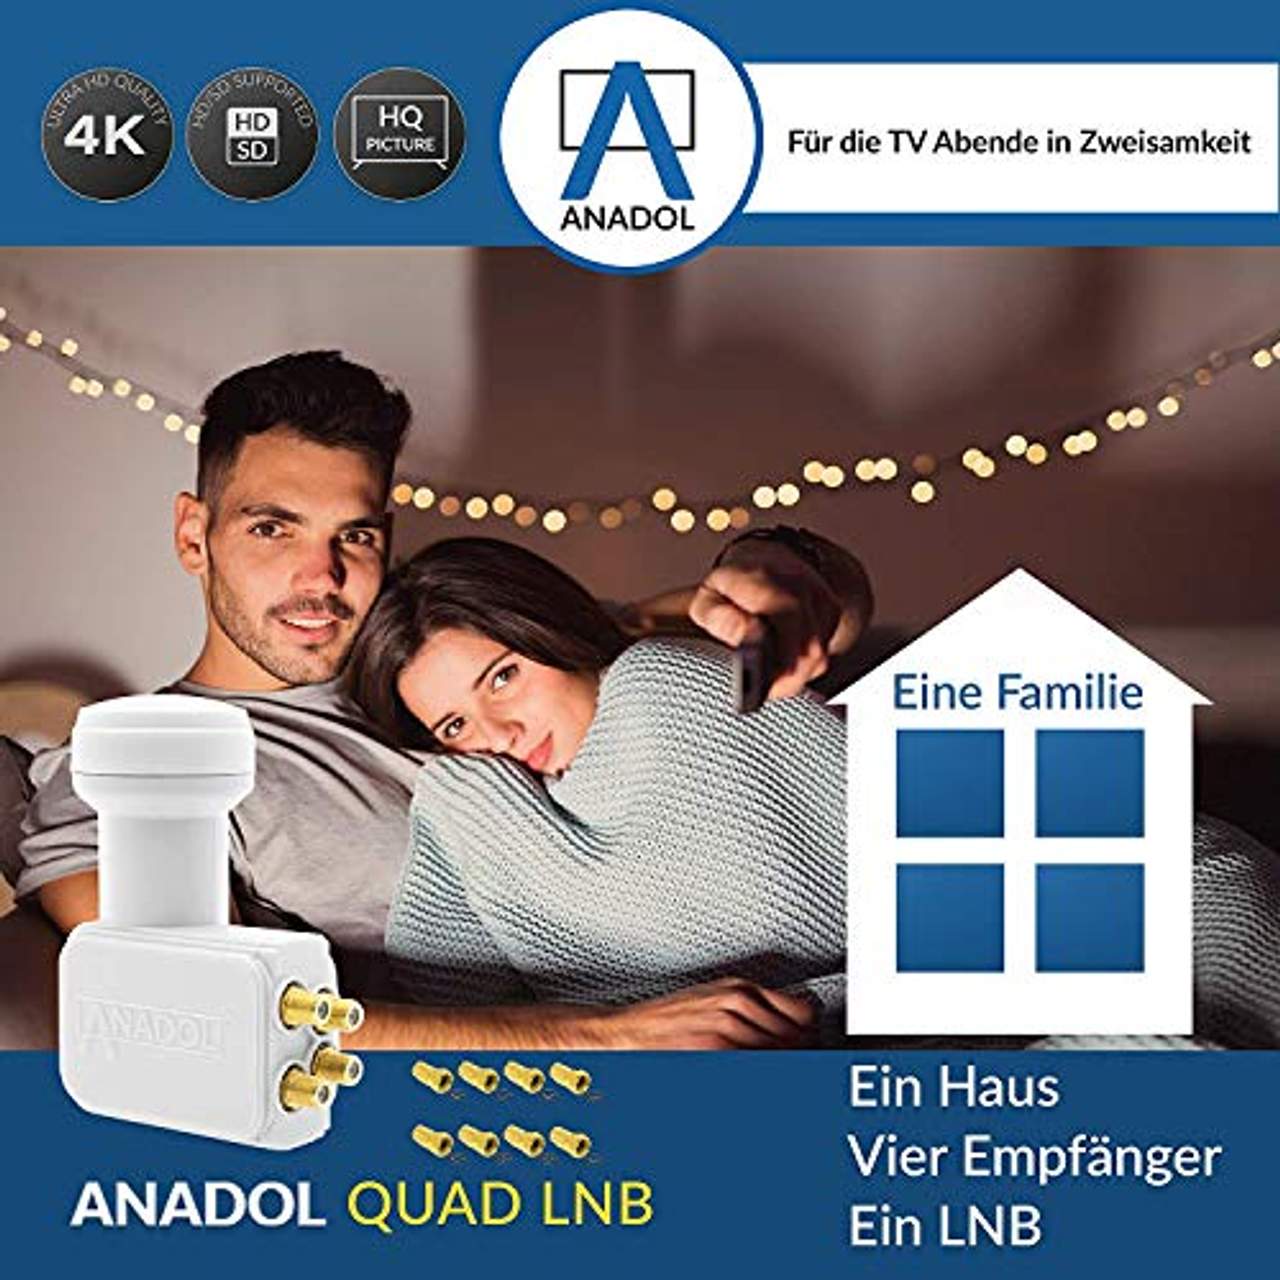 Anadol GoldLine Digital Quad LNB 4-Fach